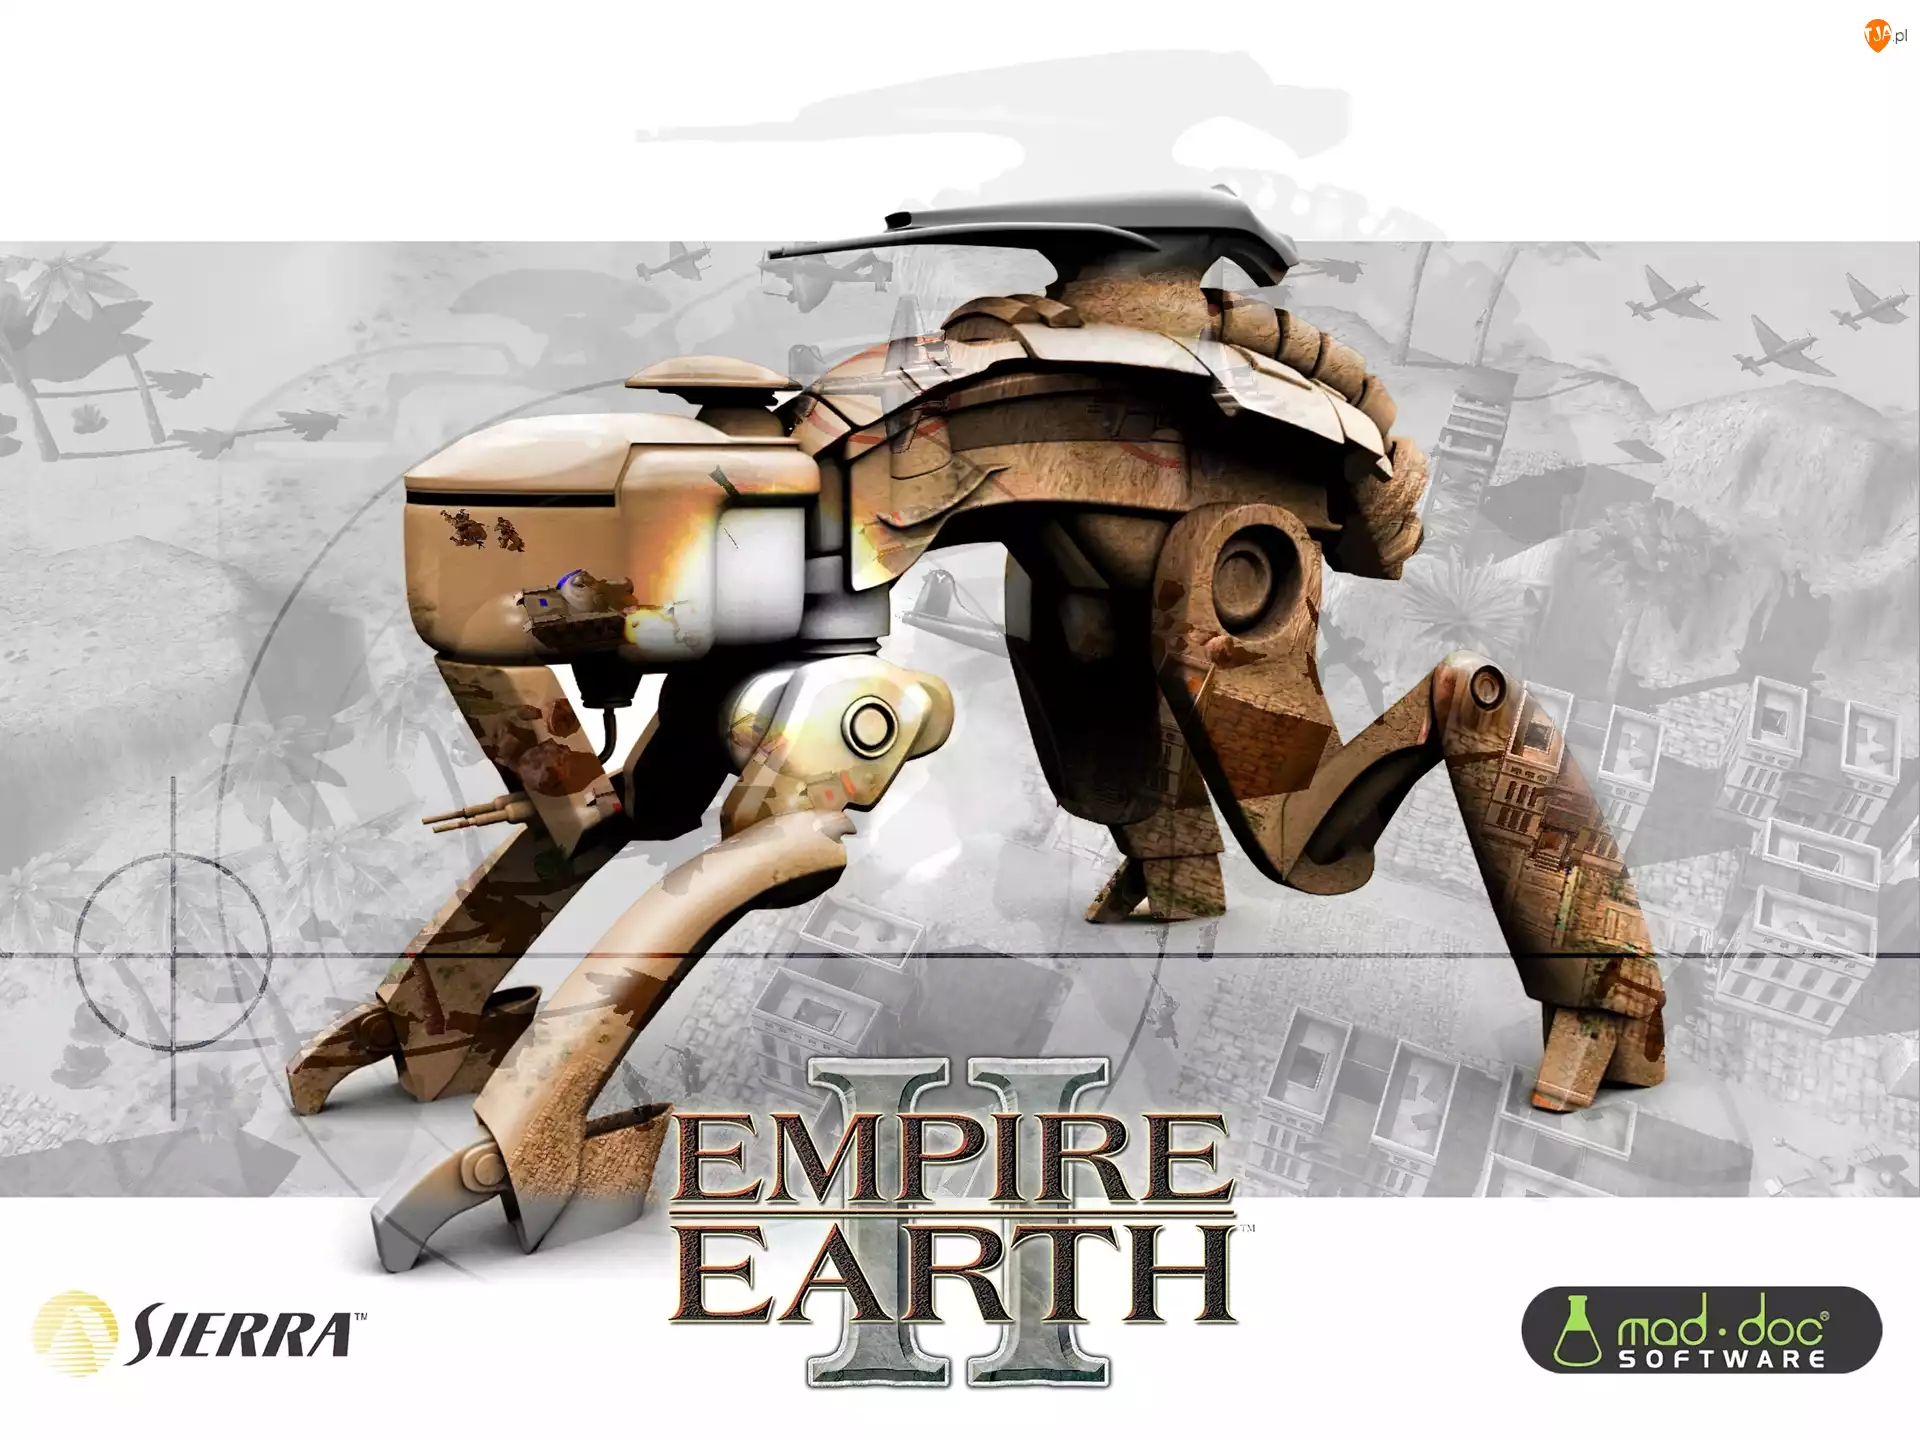 Robot, Empire Earth 2